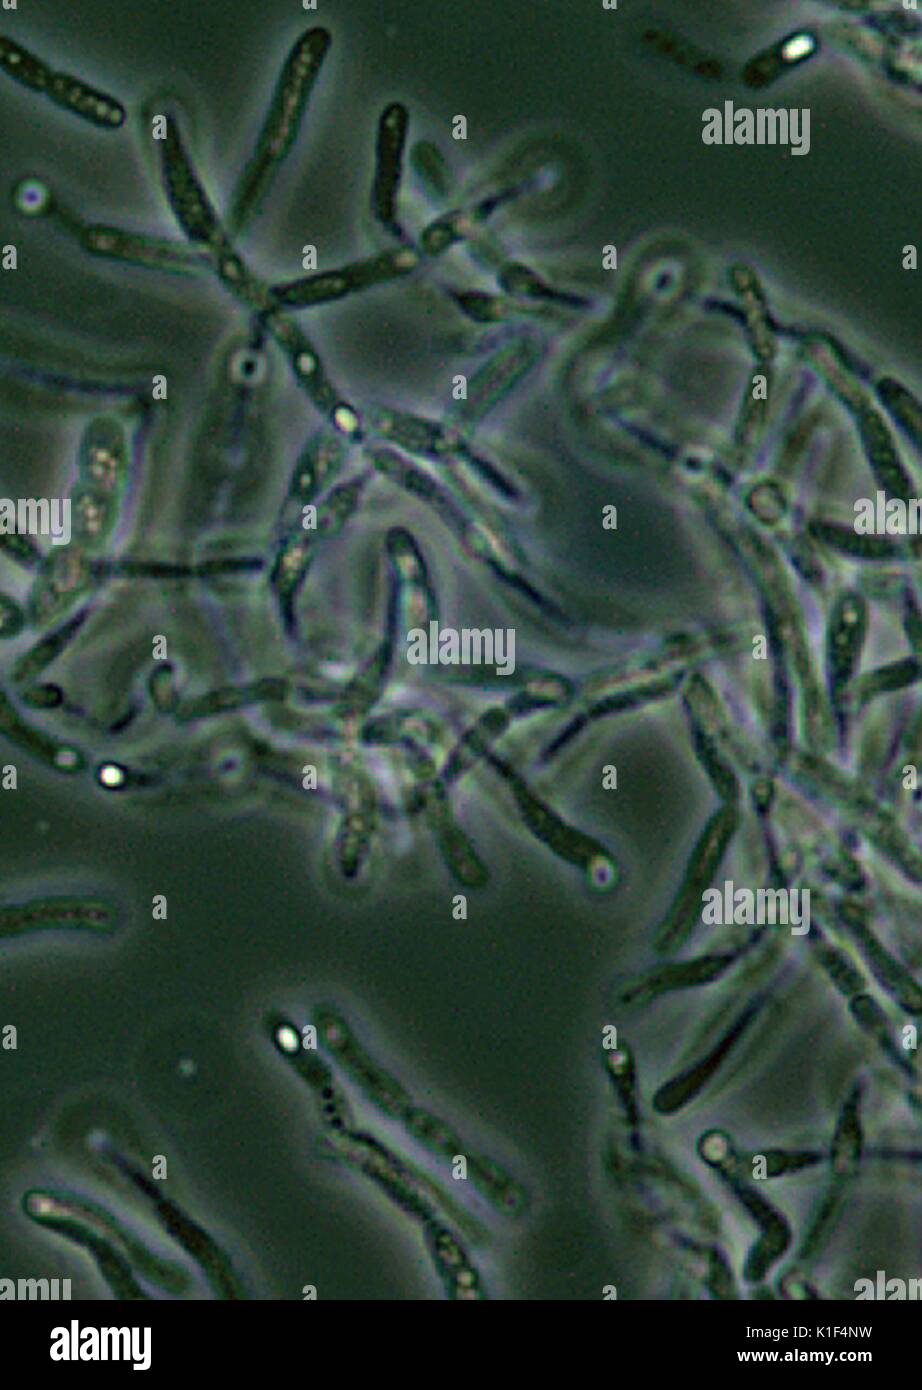 Bacillus anthracis Sporen unter Phasenkontrastmikroskopie gesehen. Bacillus anthracis endosporen sind unter Phasenkontrastmikroskopie als hellere Bereiche, Punkte, d. h. 'Licht', aufgrund der Tatsache, dass sie entwässert werden, und daher, mehr refractile gesehen. Mit freundlicher CDC/mit freundlicher Genehmigung von Larry Stauffer, Oregon State Public Health Laboratory, 2002. Stockfoto